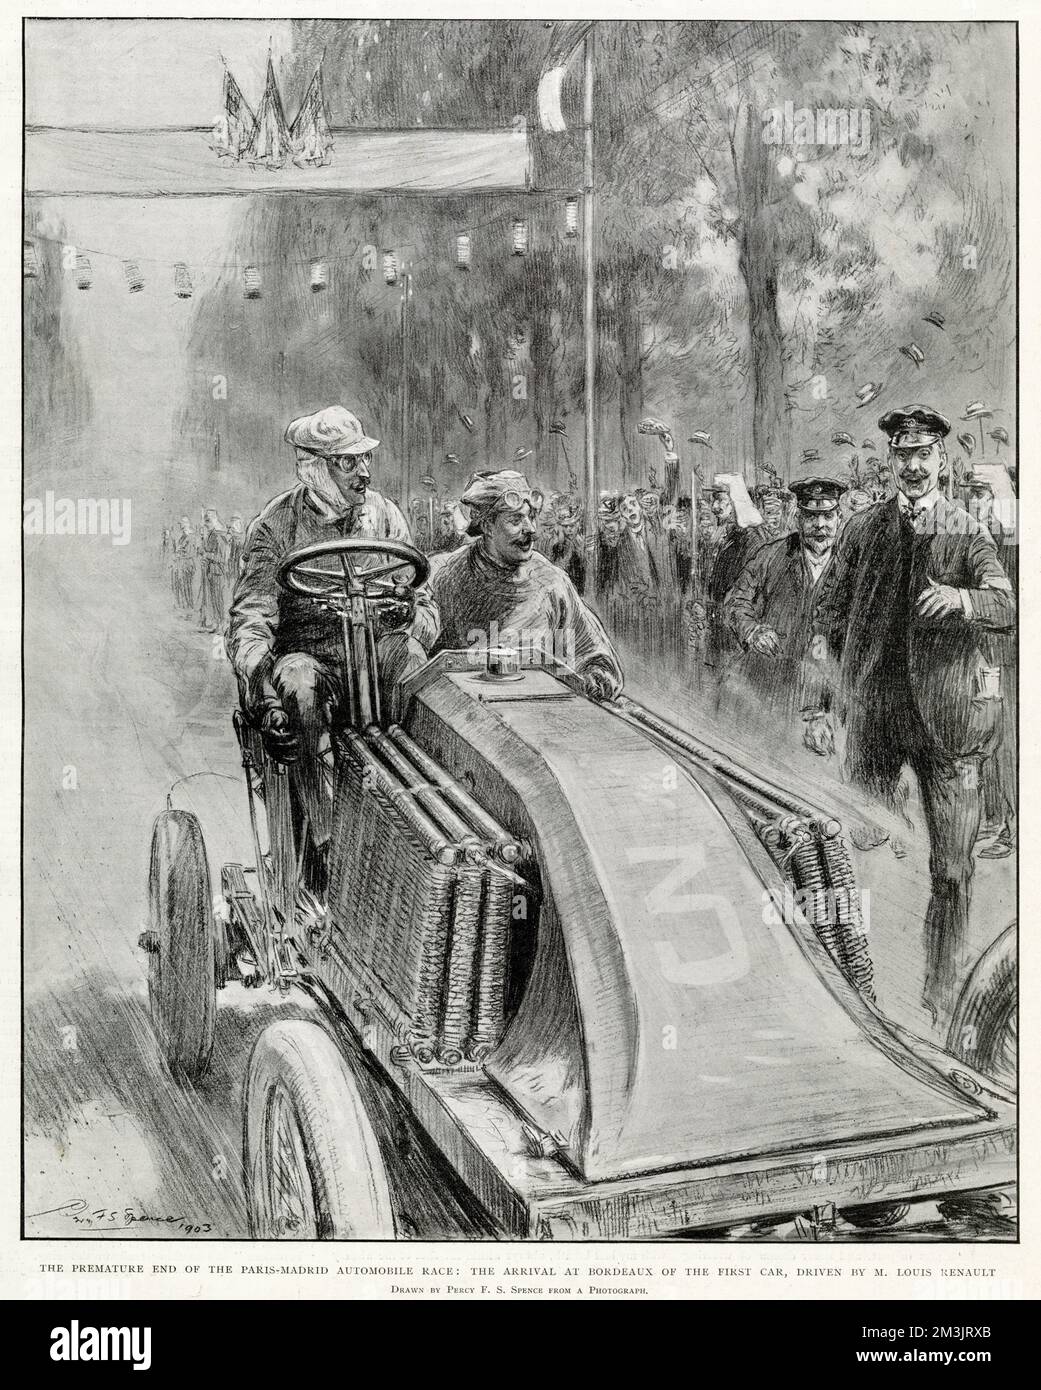 Vorzeitiges Ende des Autorennens Paris-Madrid, bei dem das erste Auto von M. Louis Renault in Bordeaux eintrifft. Renault erfuhr von dem schrecklichen Unfall, der seinem Bruder Marcel Renault widerfahren war, der später starb. Stockfoto